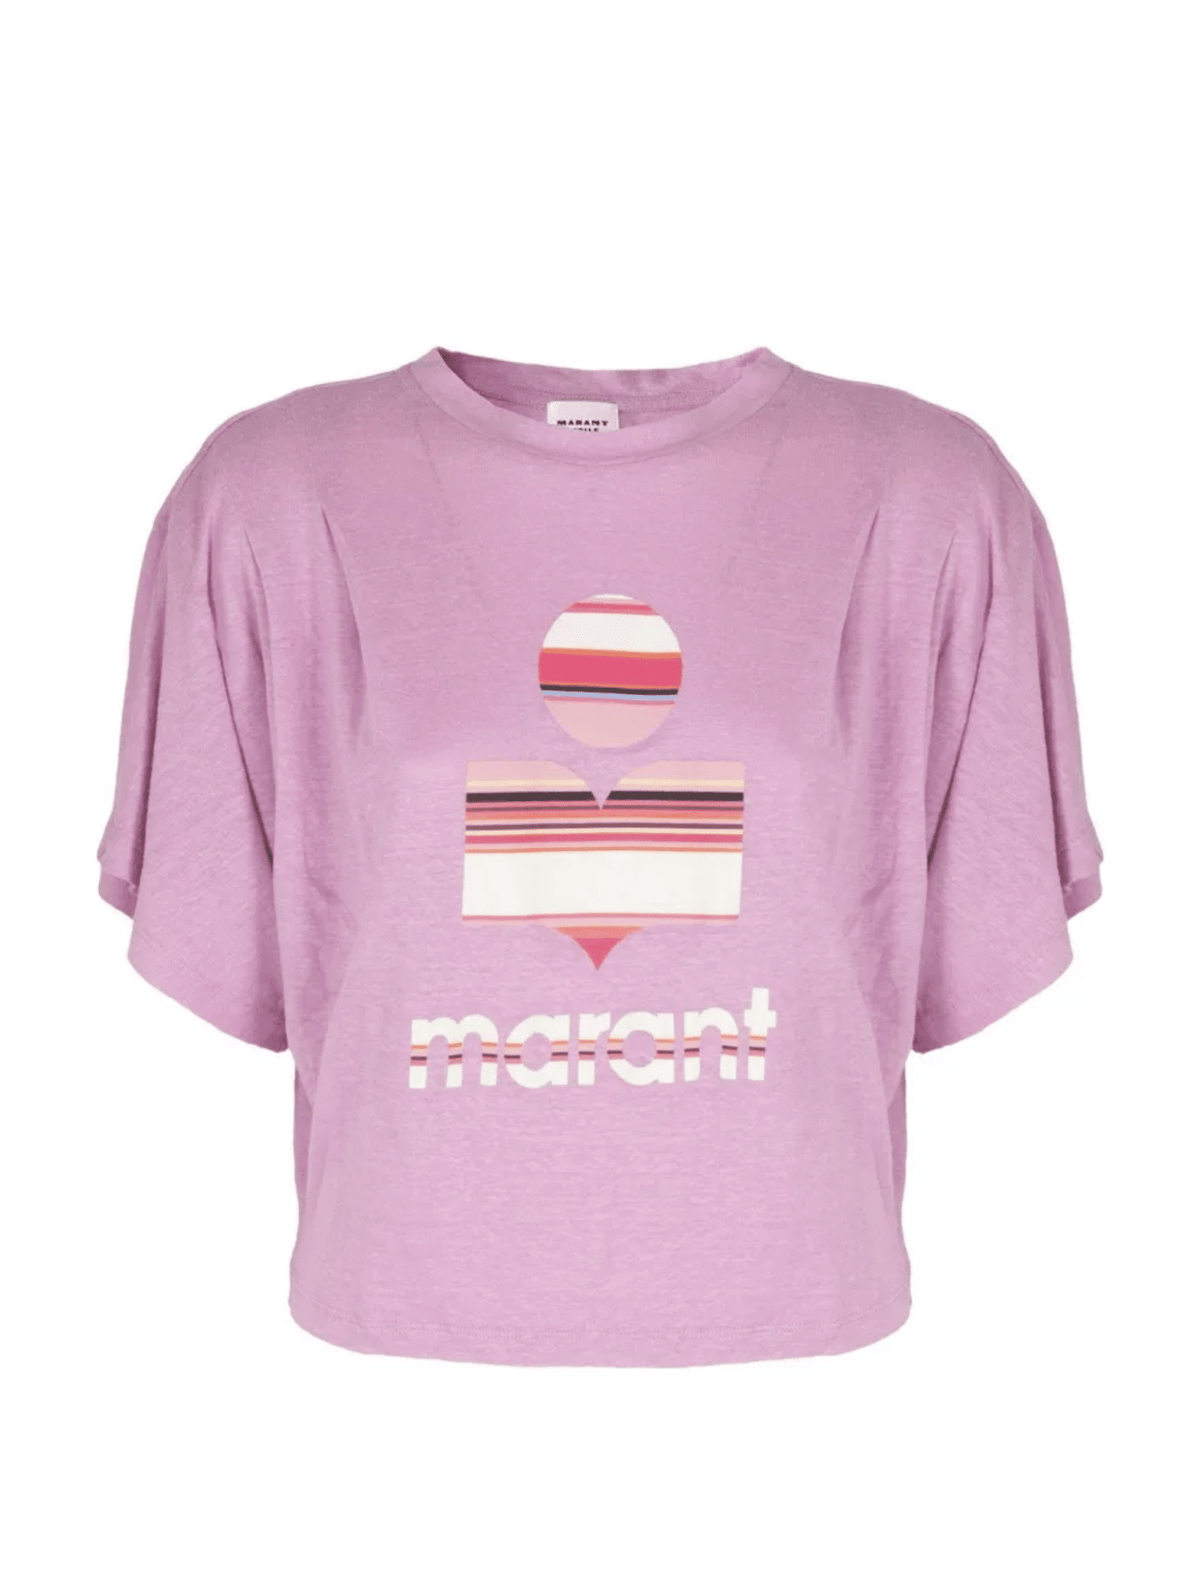 Kyanza Tee Shirt / Lilac Womens Isabel Marant Étoile 